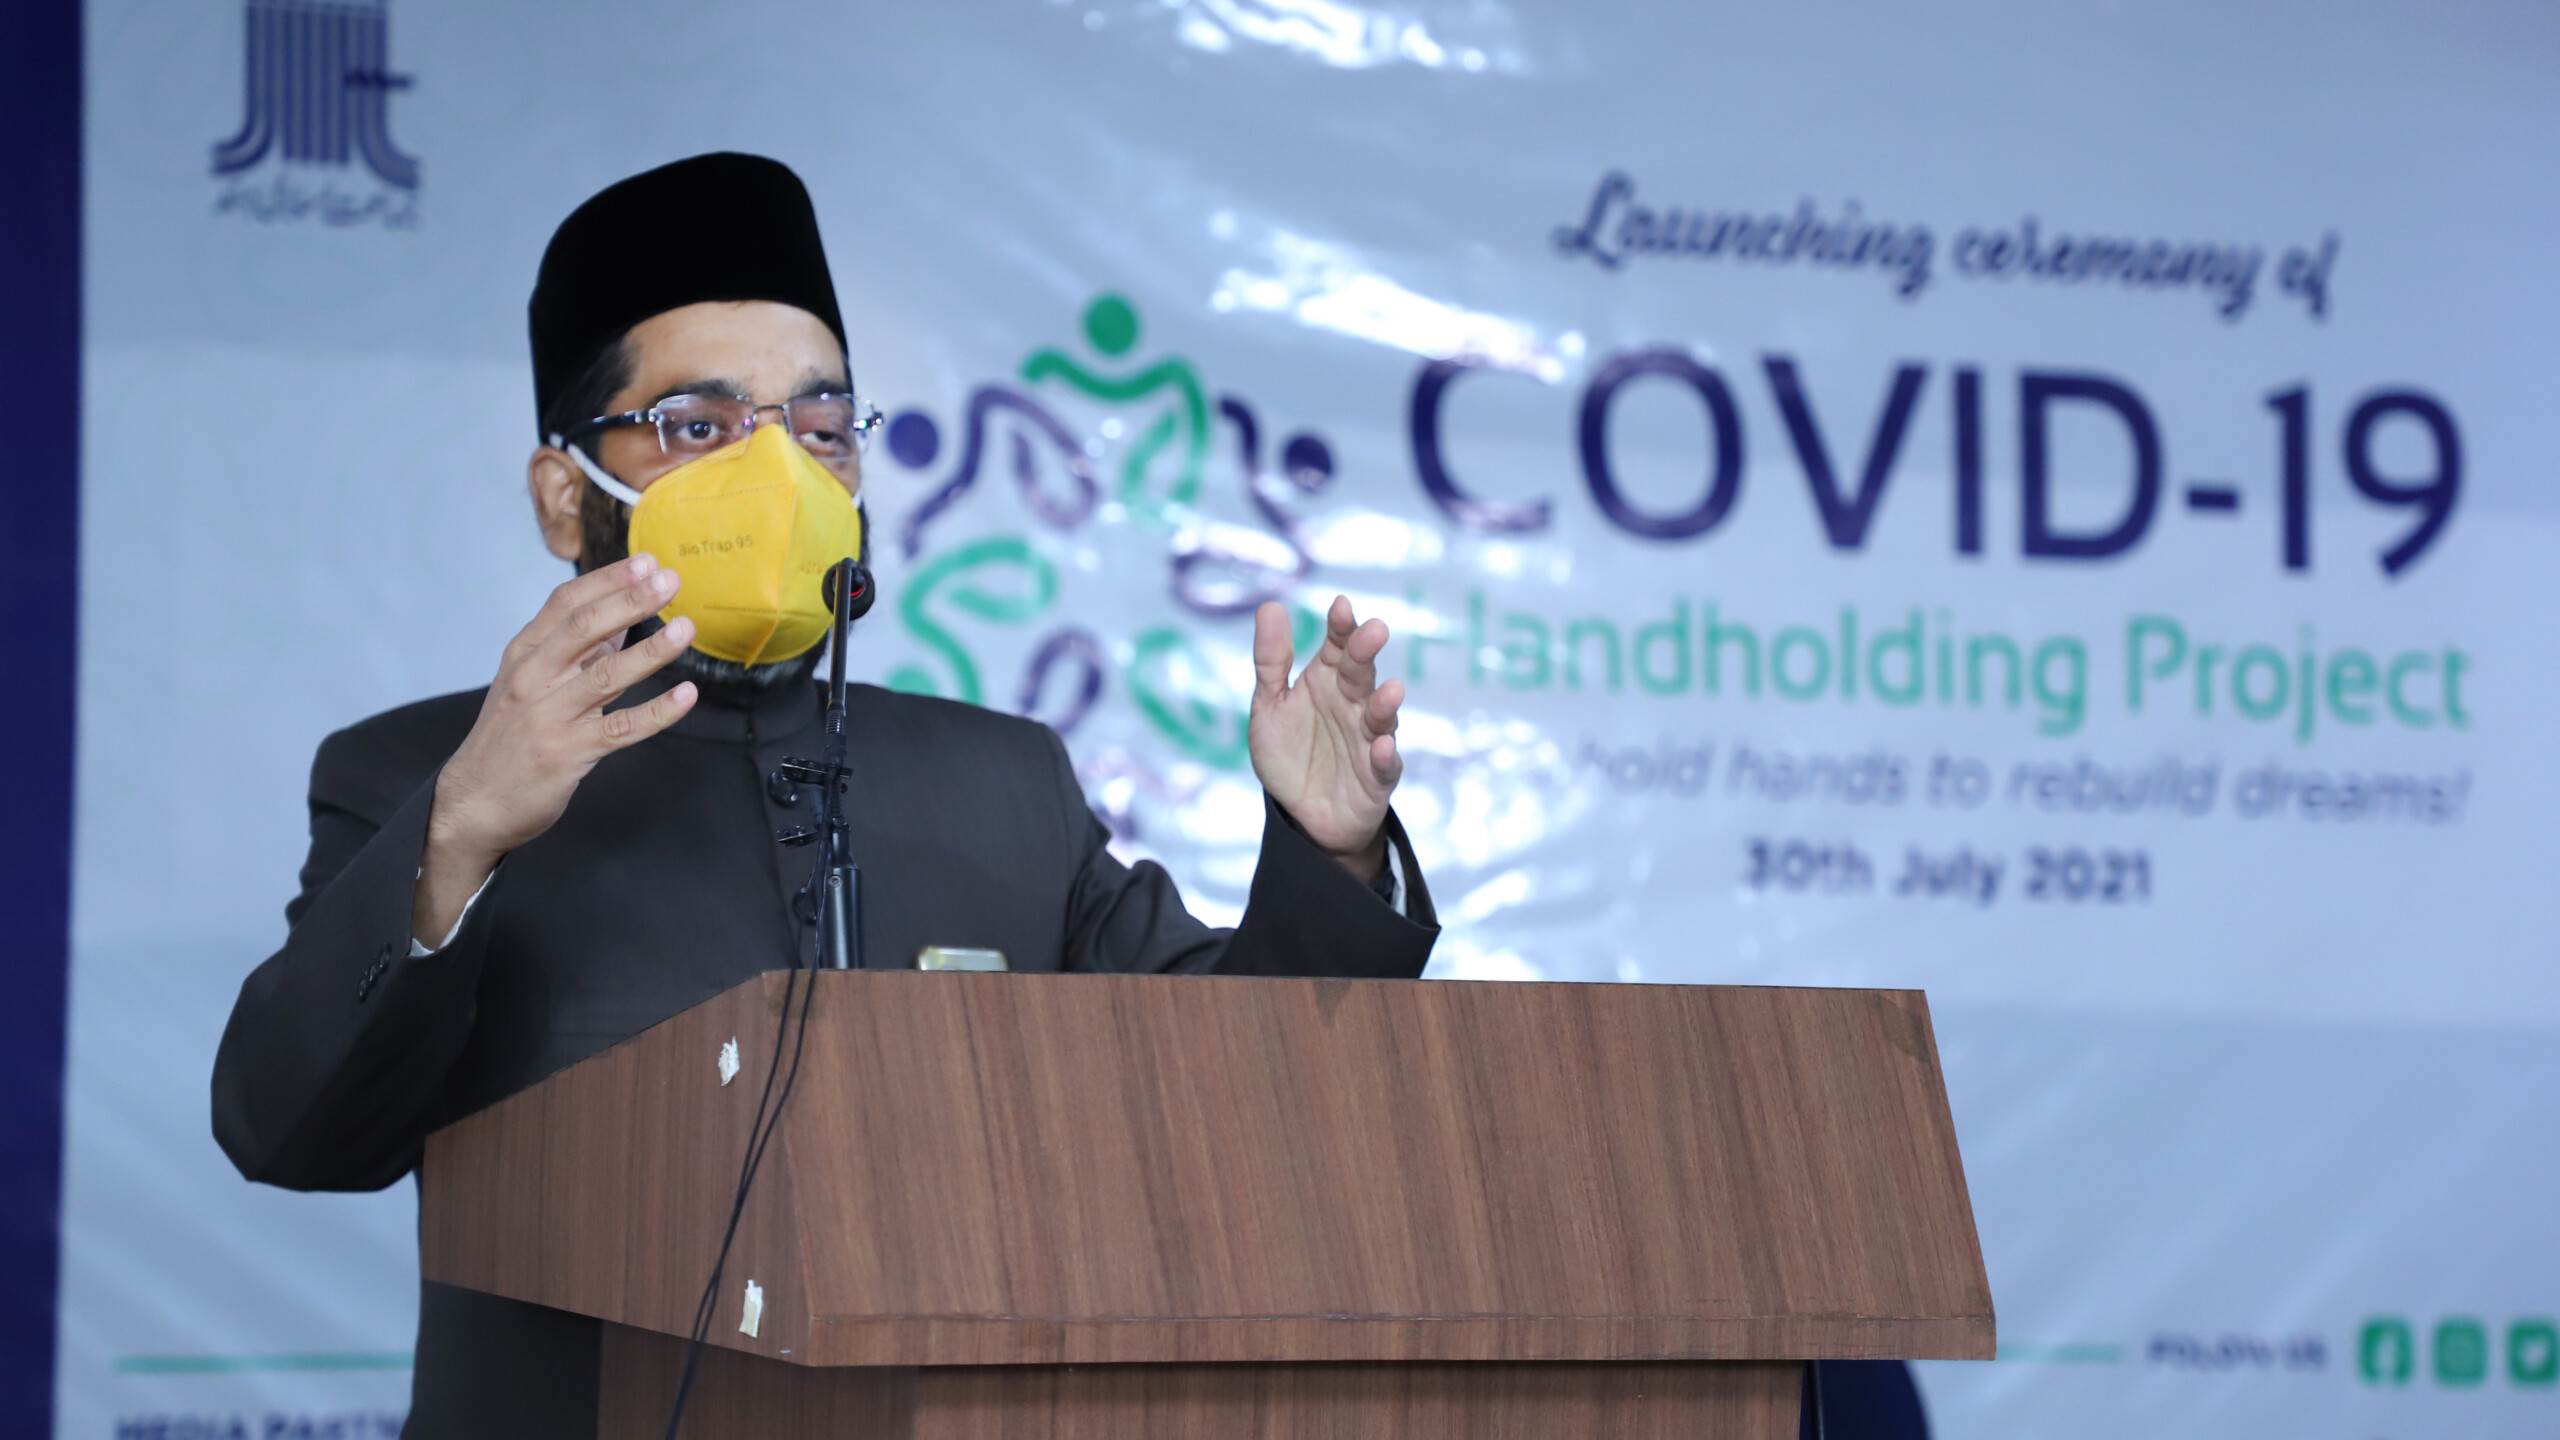 امیر جماعت اسلامی، سہولت کے کووڈ-19 ہینڈ ہولڈنگ منصوبے کے افتتاحی پروگرام میں خطاب کرتے ہوئے